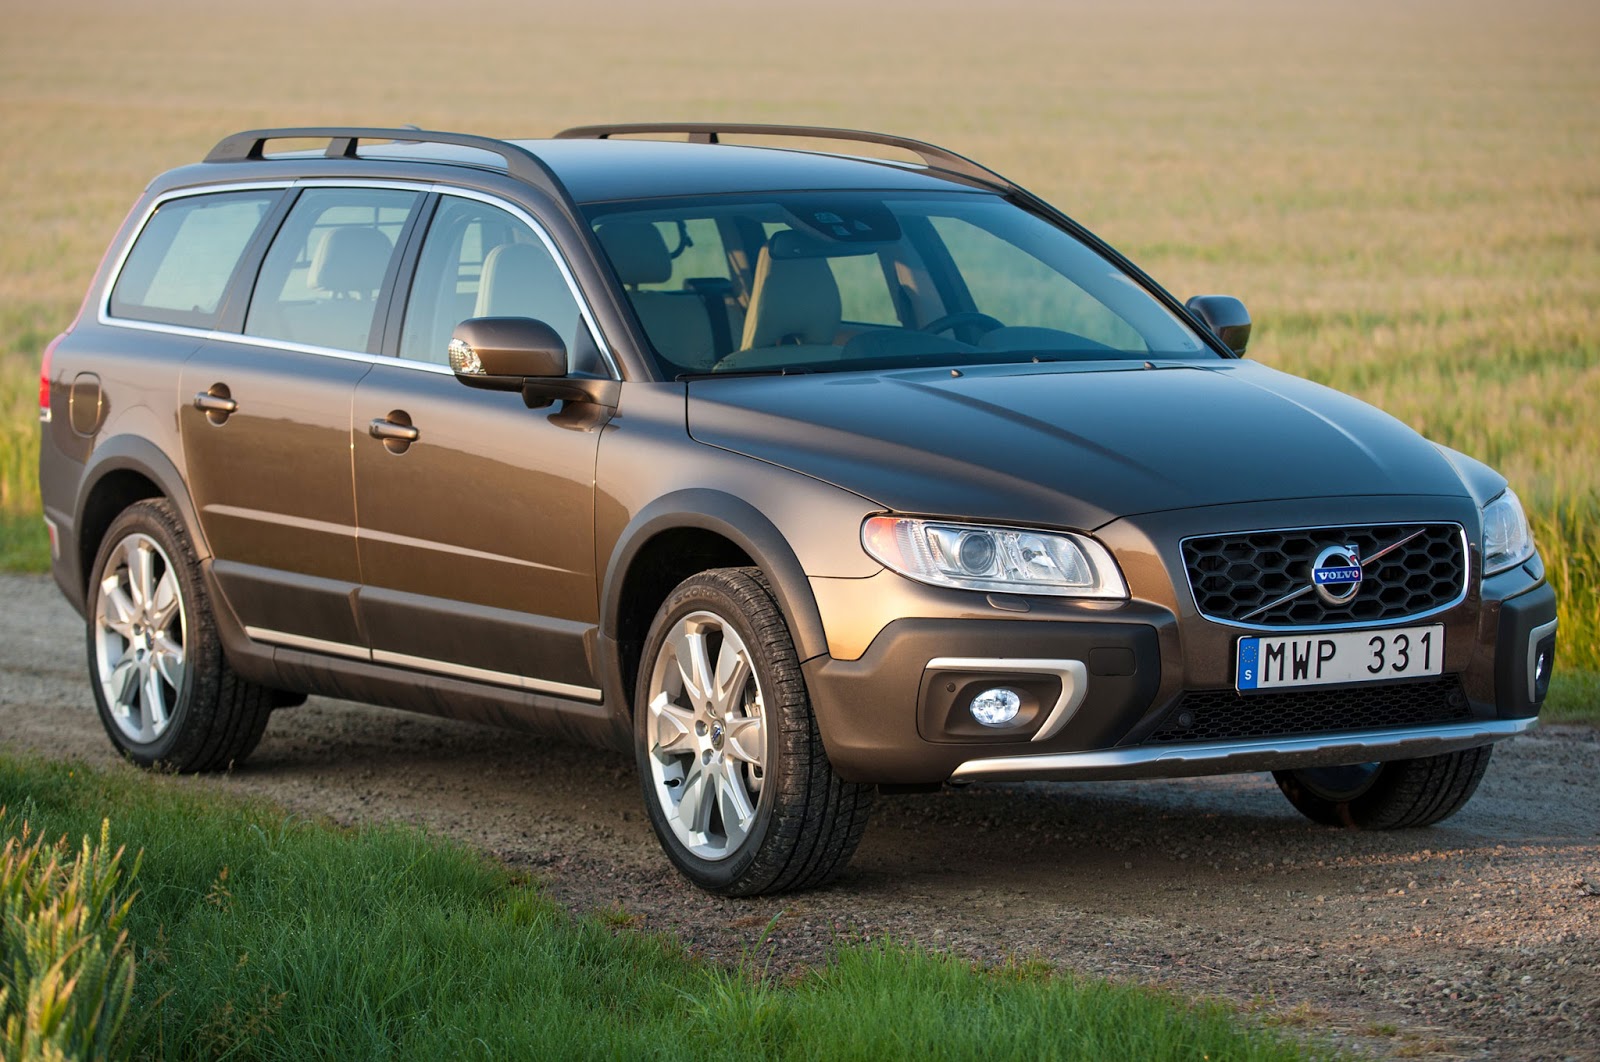 XC702B25CF258025CE25B125CF258125CE25BF25CF258525CF258325CE25B925CE25AC25CF258325CF258425CE25B725CE25BA25CE25B52B25CF258425CE25BF2B2007 1 Το Volvo V90 Cross Country απευθύνεται σε ανήσυχους εξερευνητές της περιπέτειας!